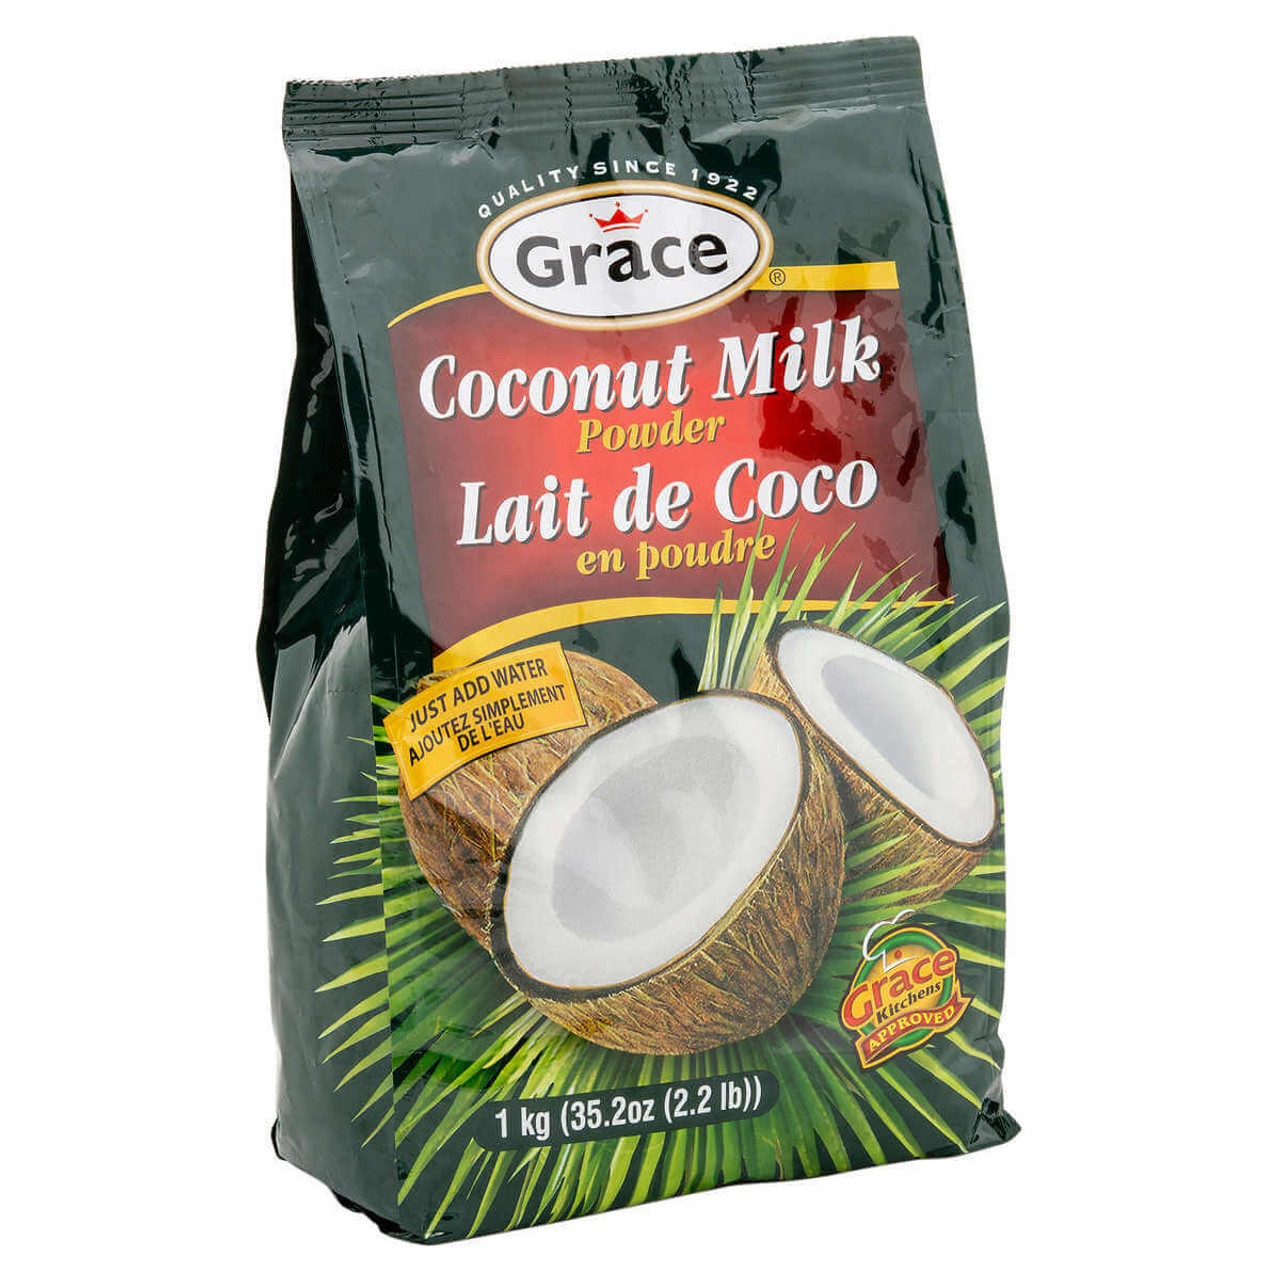 Grace Coconut Milk Powder - 1 kg | Creamy Coconut Flavor in Powdered Form- Chicken Pieces